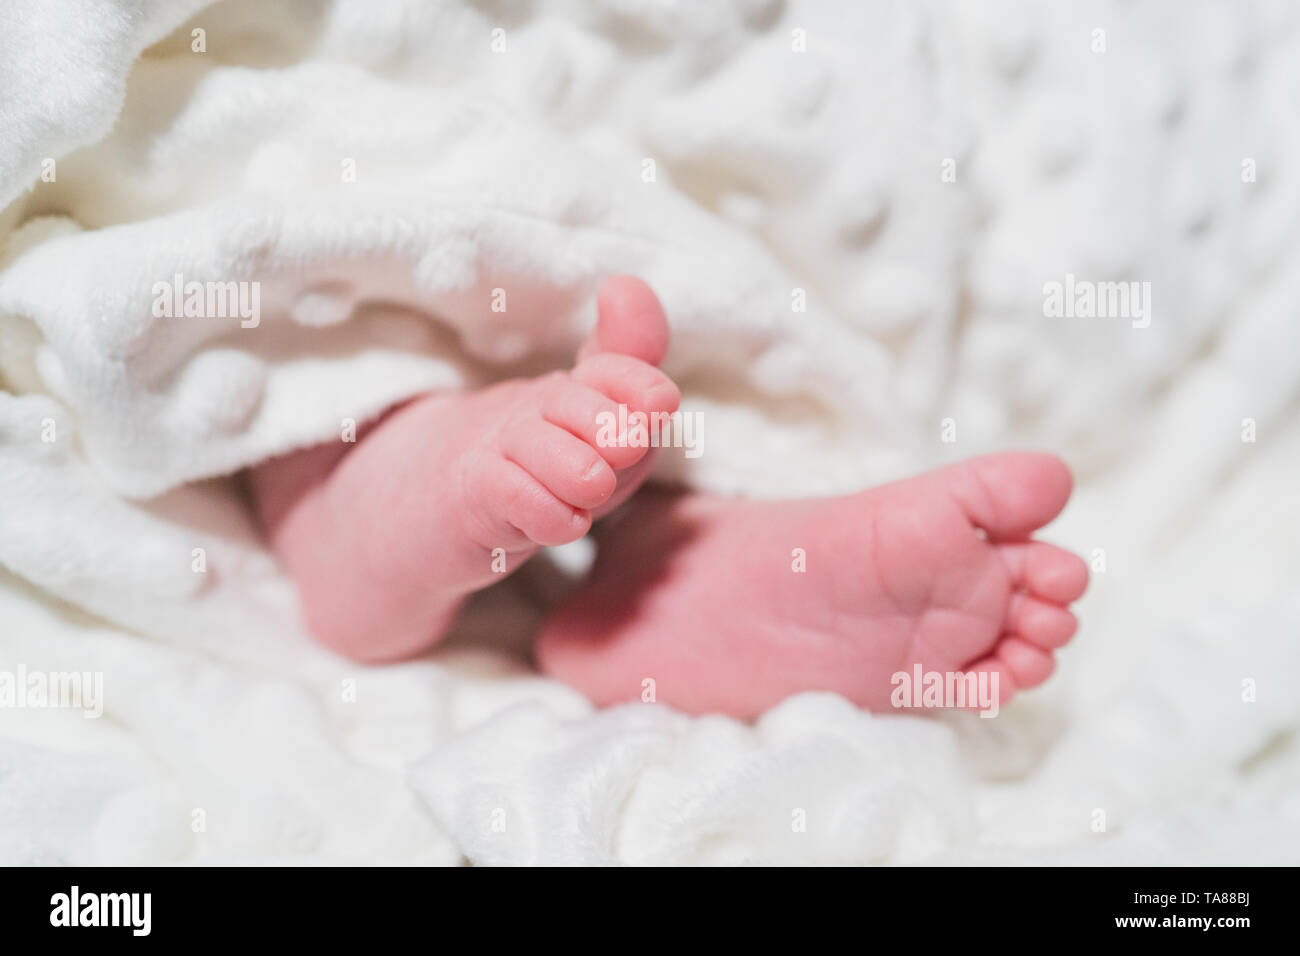 New Born Baby piccoli piedi su coltre bianca. Famiglia, vita nuova, infanzia, inizio concetto. Foto Stock